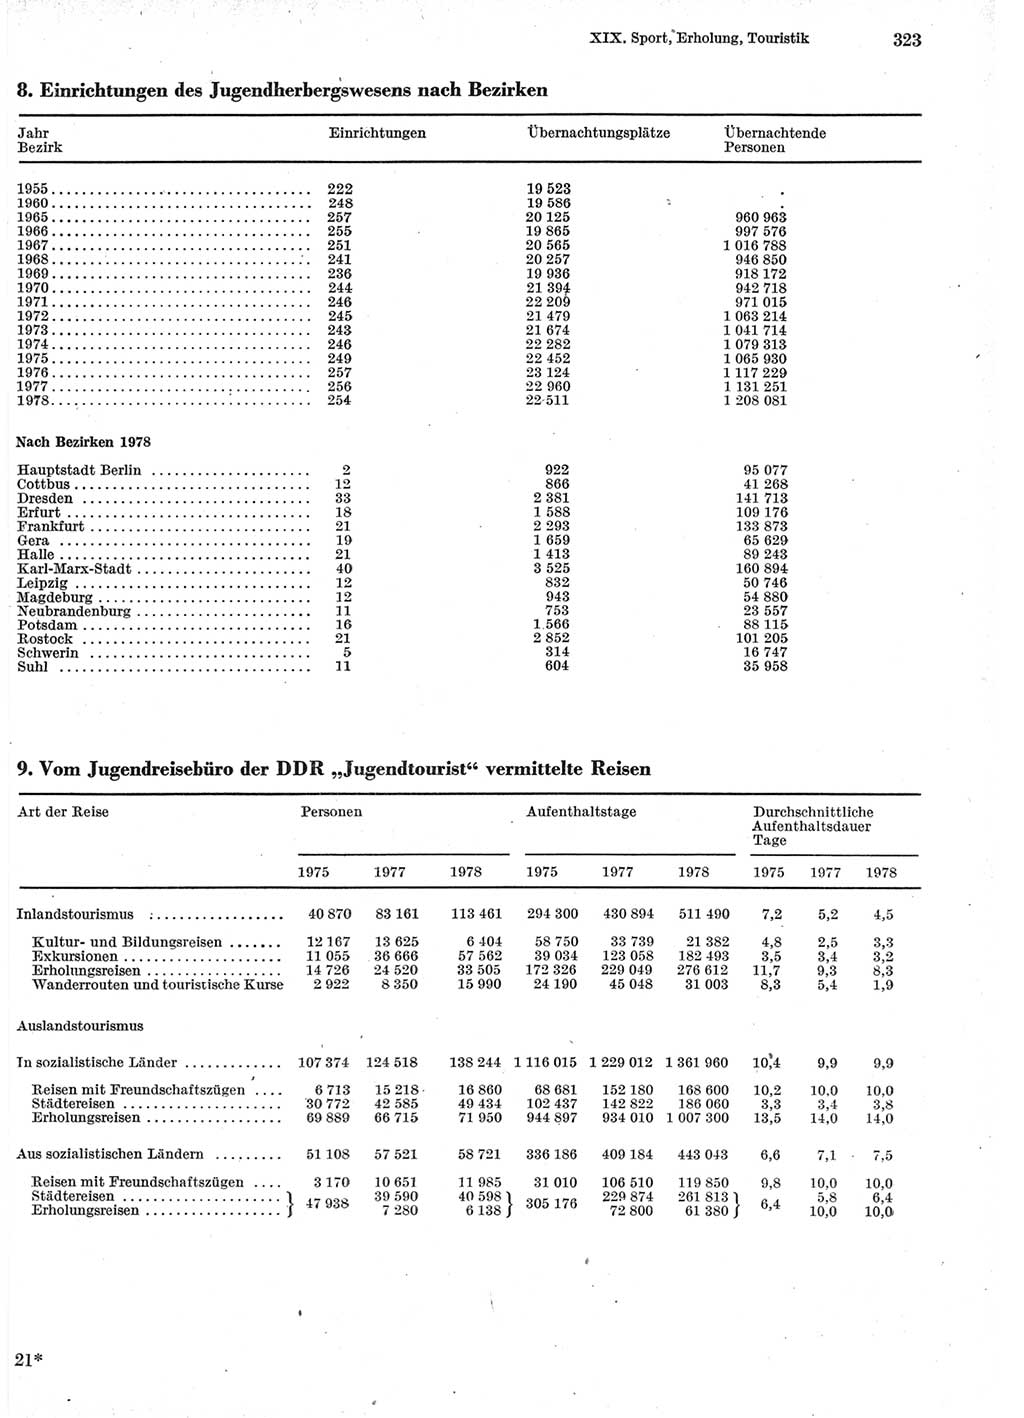 Statistisches Jahrbuch der Deutschen Demokratischen Republik (DDR) 1979, Seite 323 (Stat. Jb. DDR 1979, S. 323)